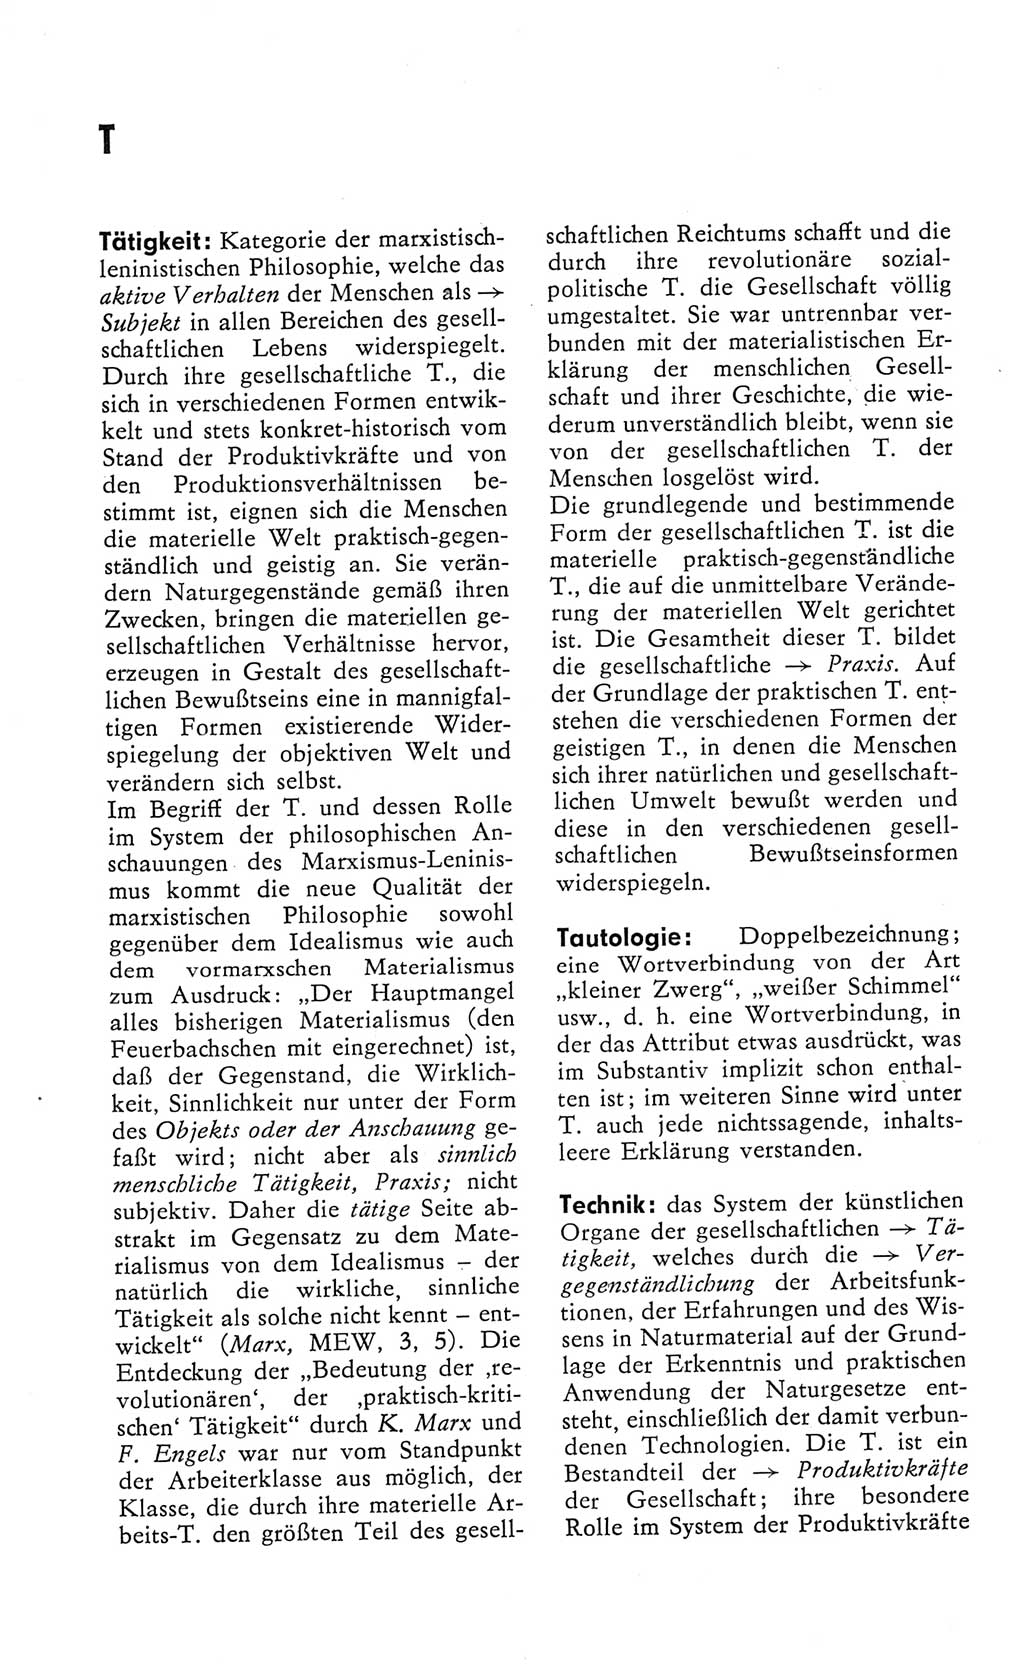 Kleines Wörterbuch der marxistisch-leninistischen Philosophie [Deutsche Demokratische Republik (DDR)] 1982, Seite 314 (Kl. Wb. ML Phil. DDR 1982, S. 314)